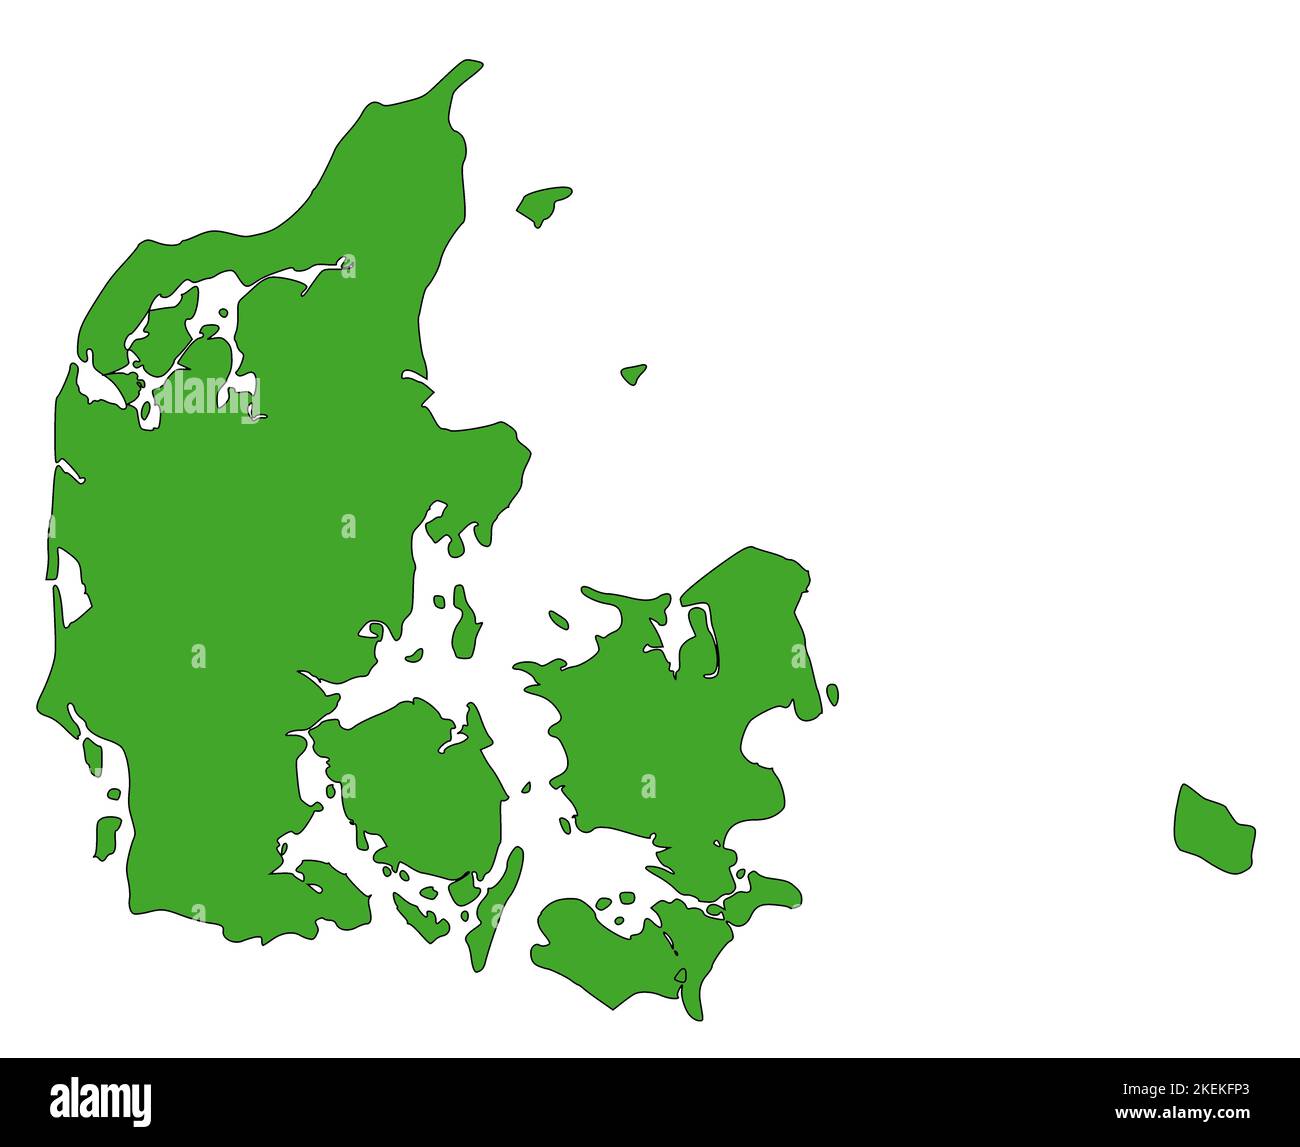 Karte von Dänemark mit grüner Farbe gefüllt Stockfoto